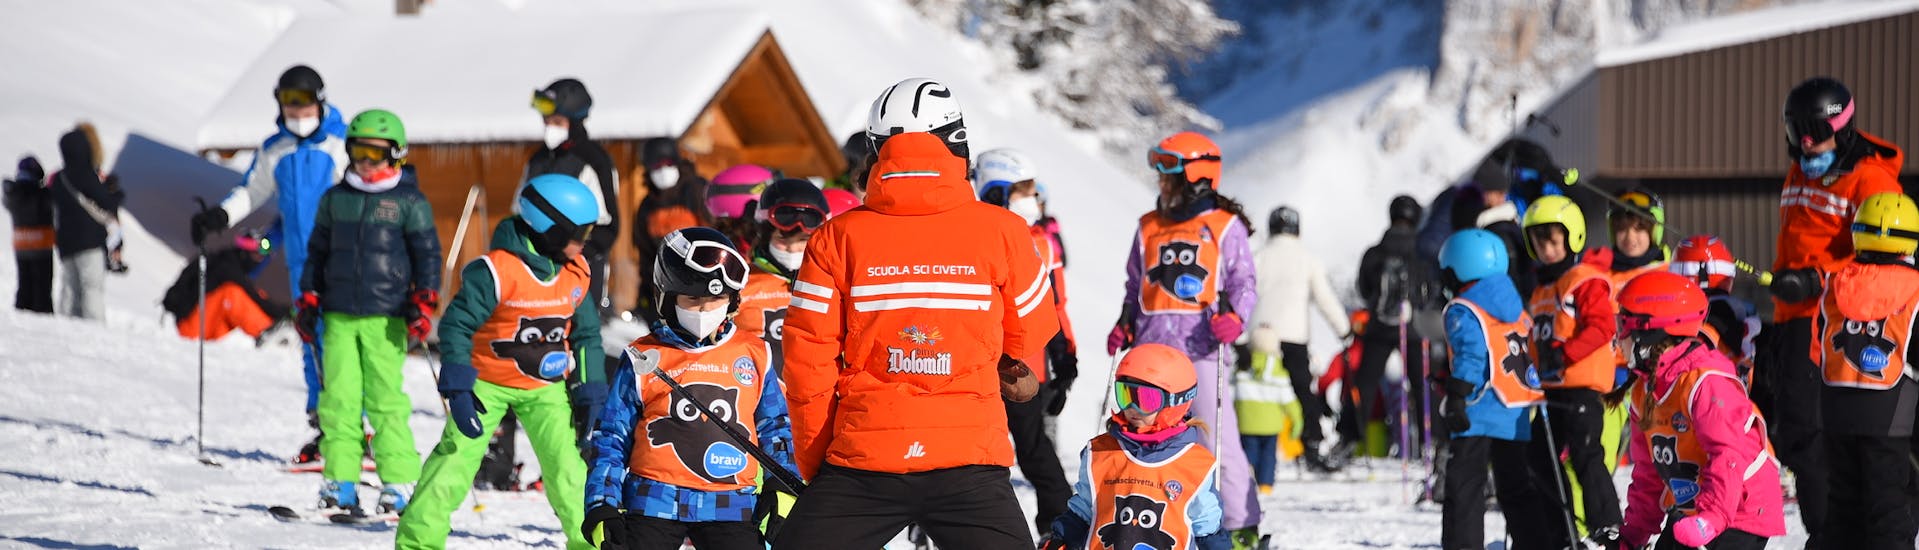 Dei bambini durante le Lezioni di sci per bambini (5-12 anni) per tutti i livelli con Scuola Sci Civetta - Val di Zoldo Pecol.